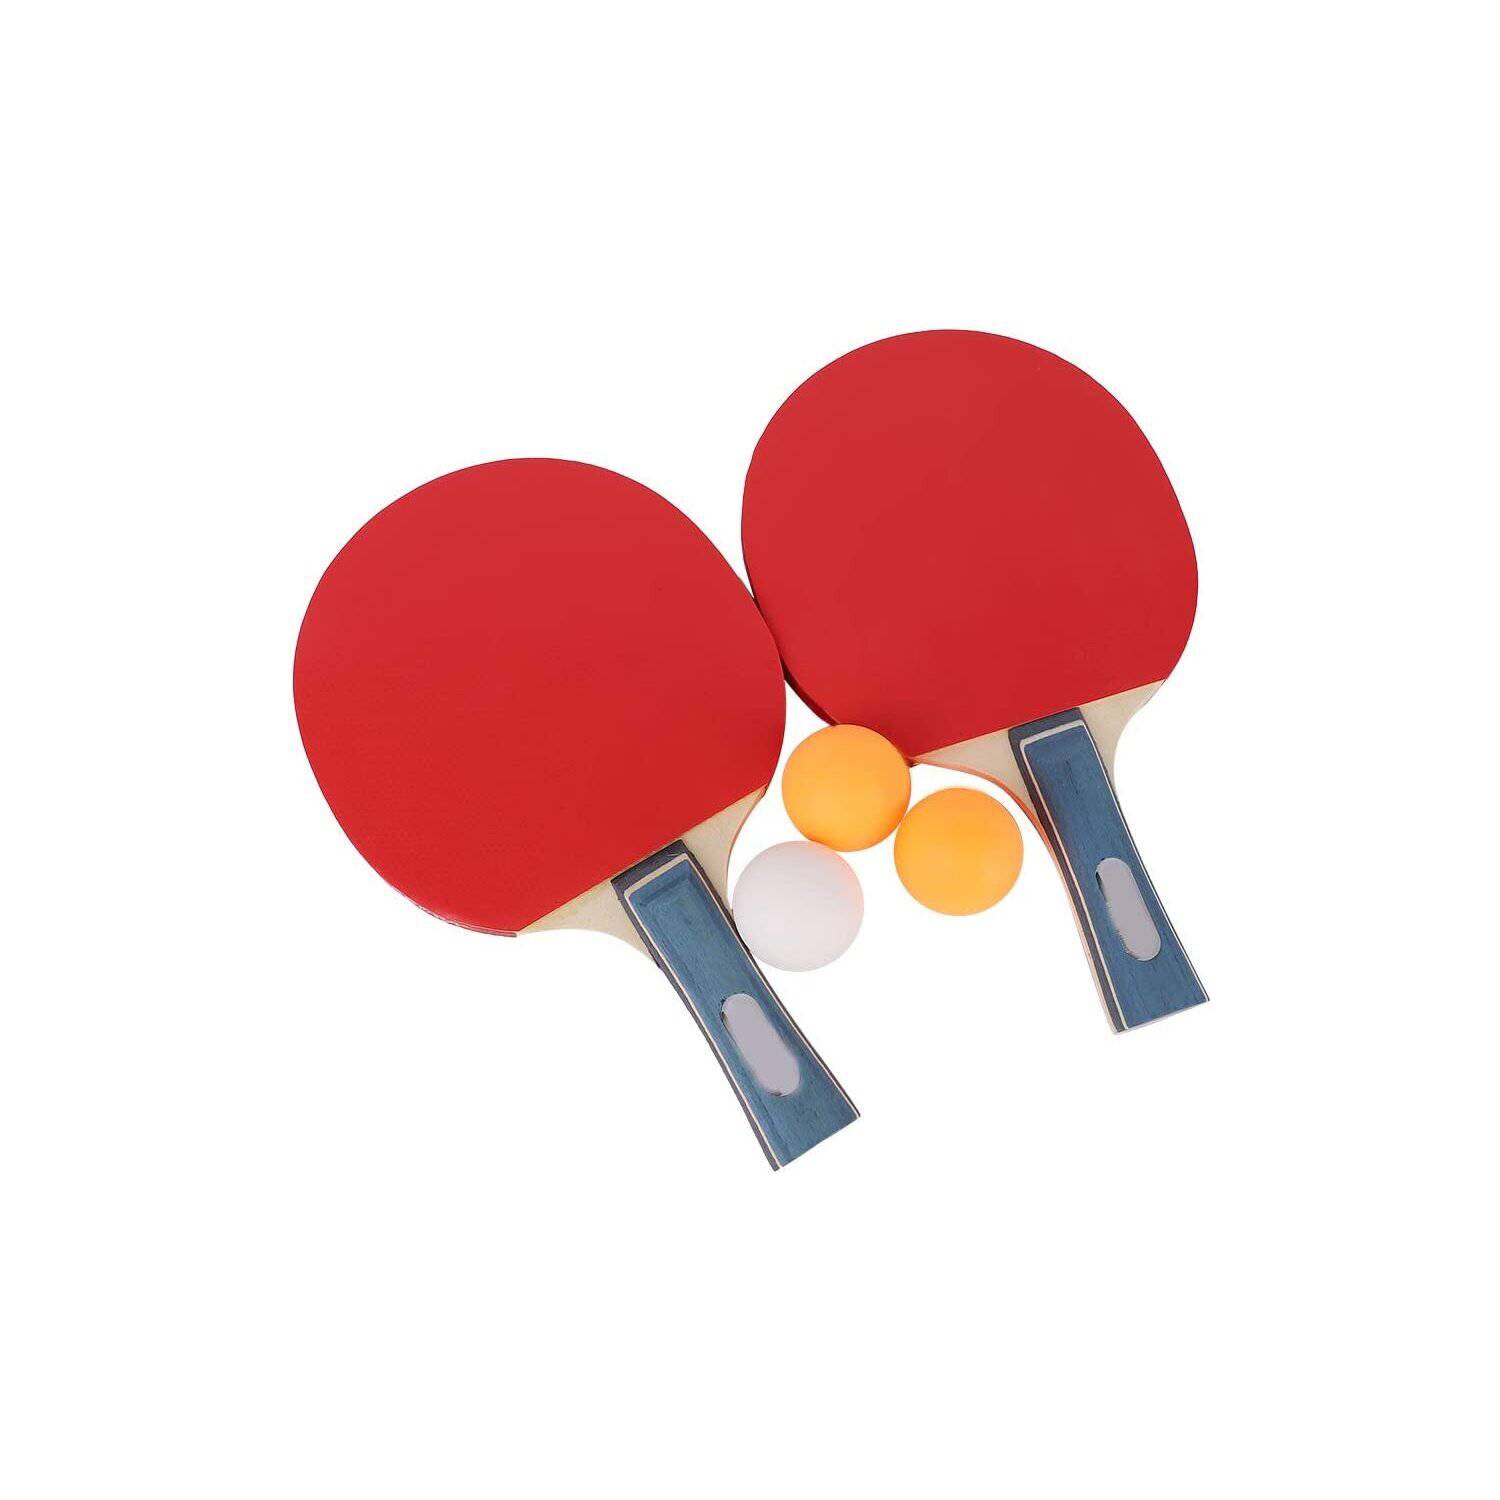 Lo último en palas de ping-pong